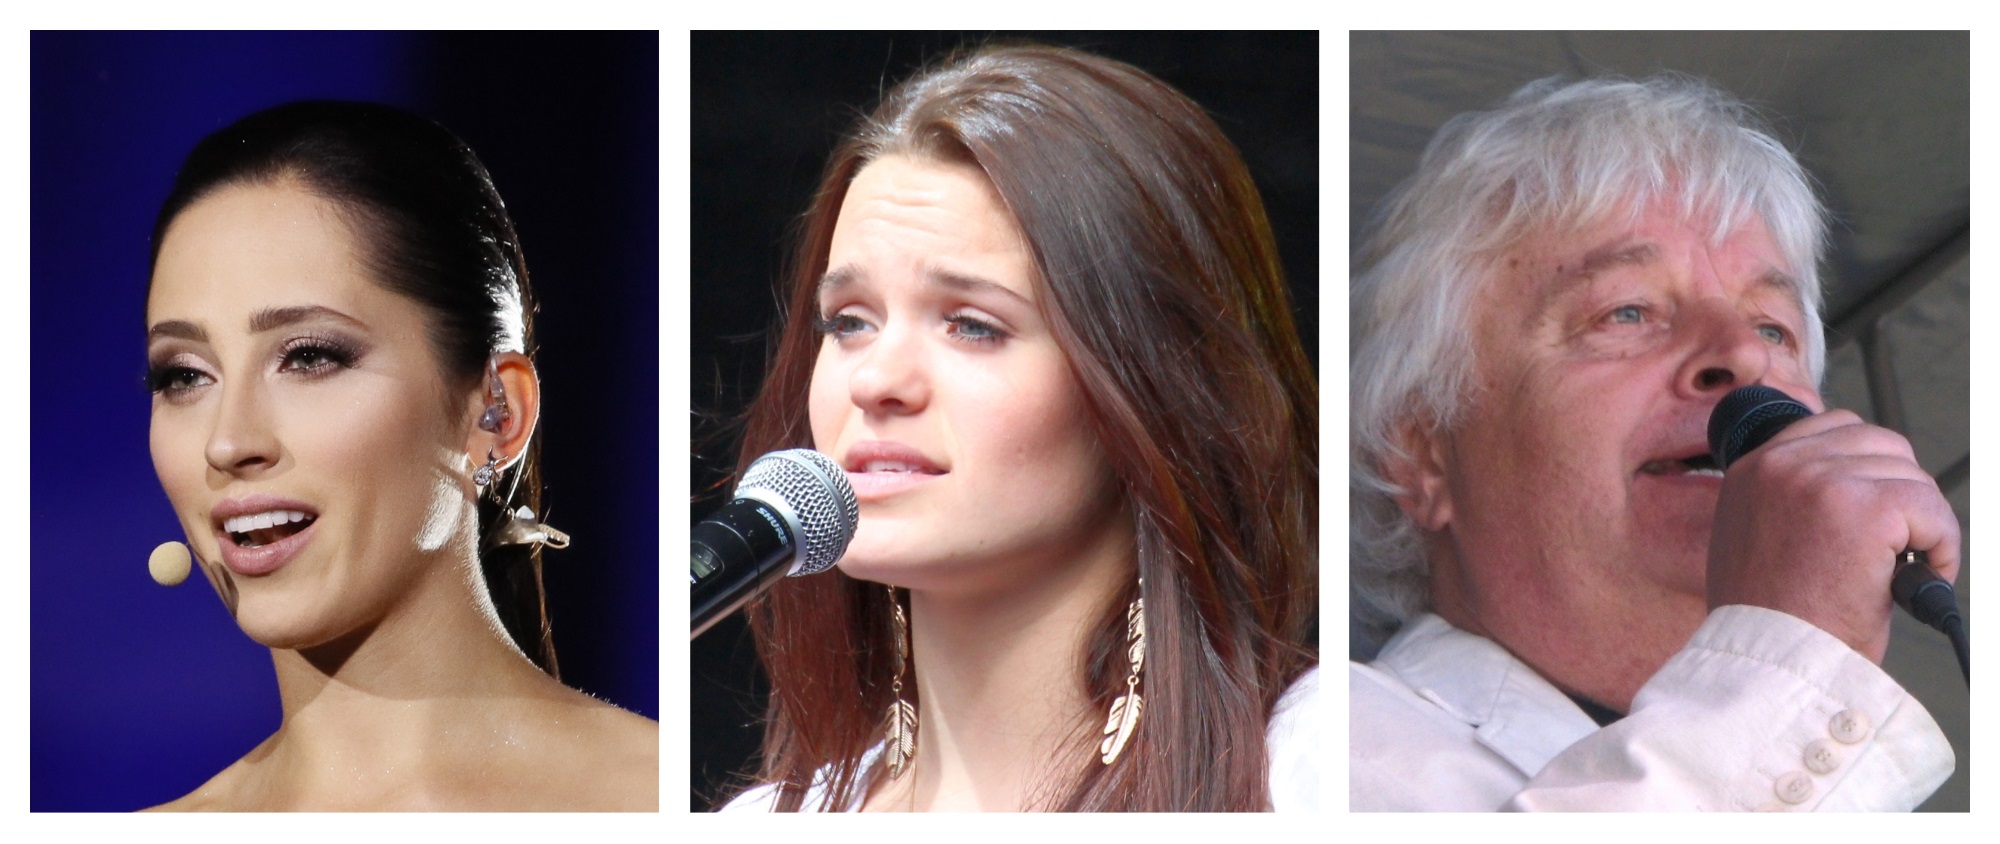  Três ‘ex-eurovisivos’ são convidados da final do Eesti Laul (Estónia)